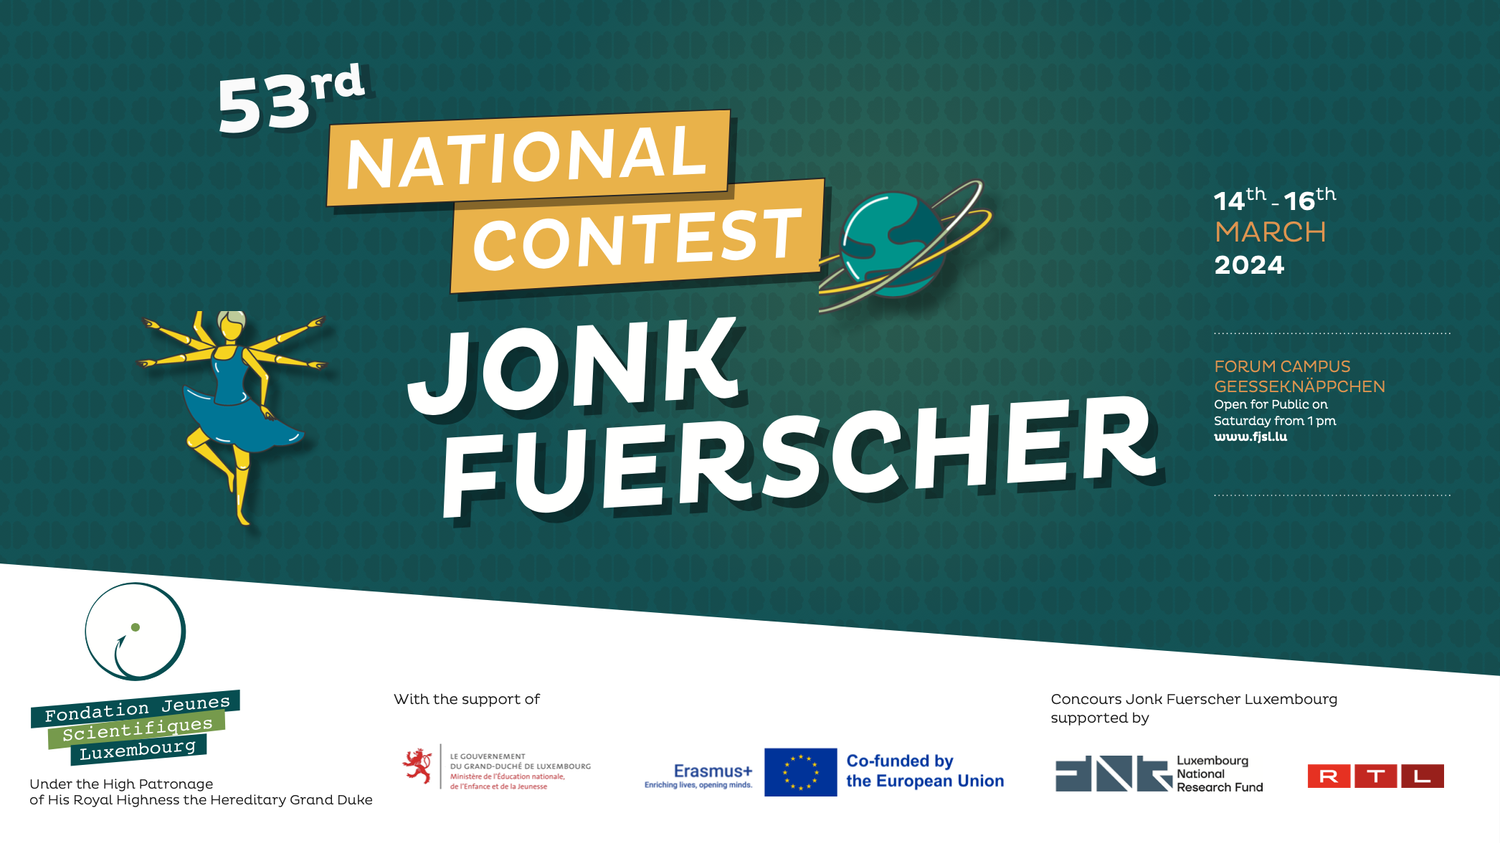 53rd National Contest Jonk Fuerscher